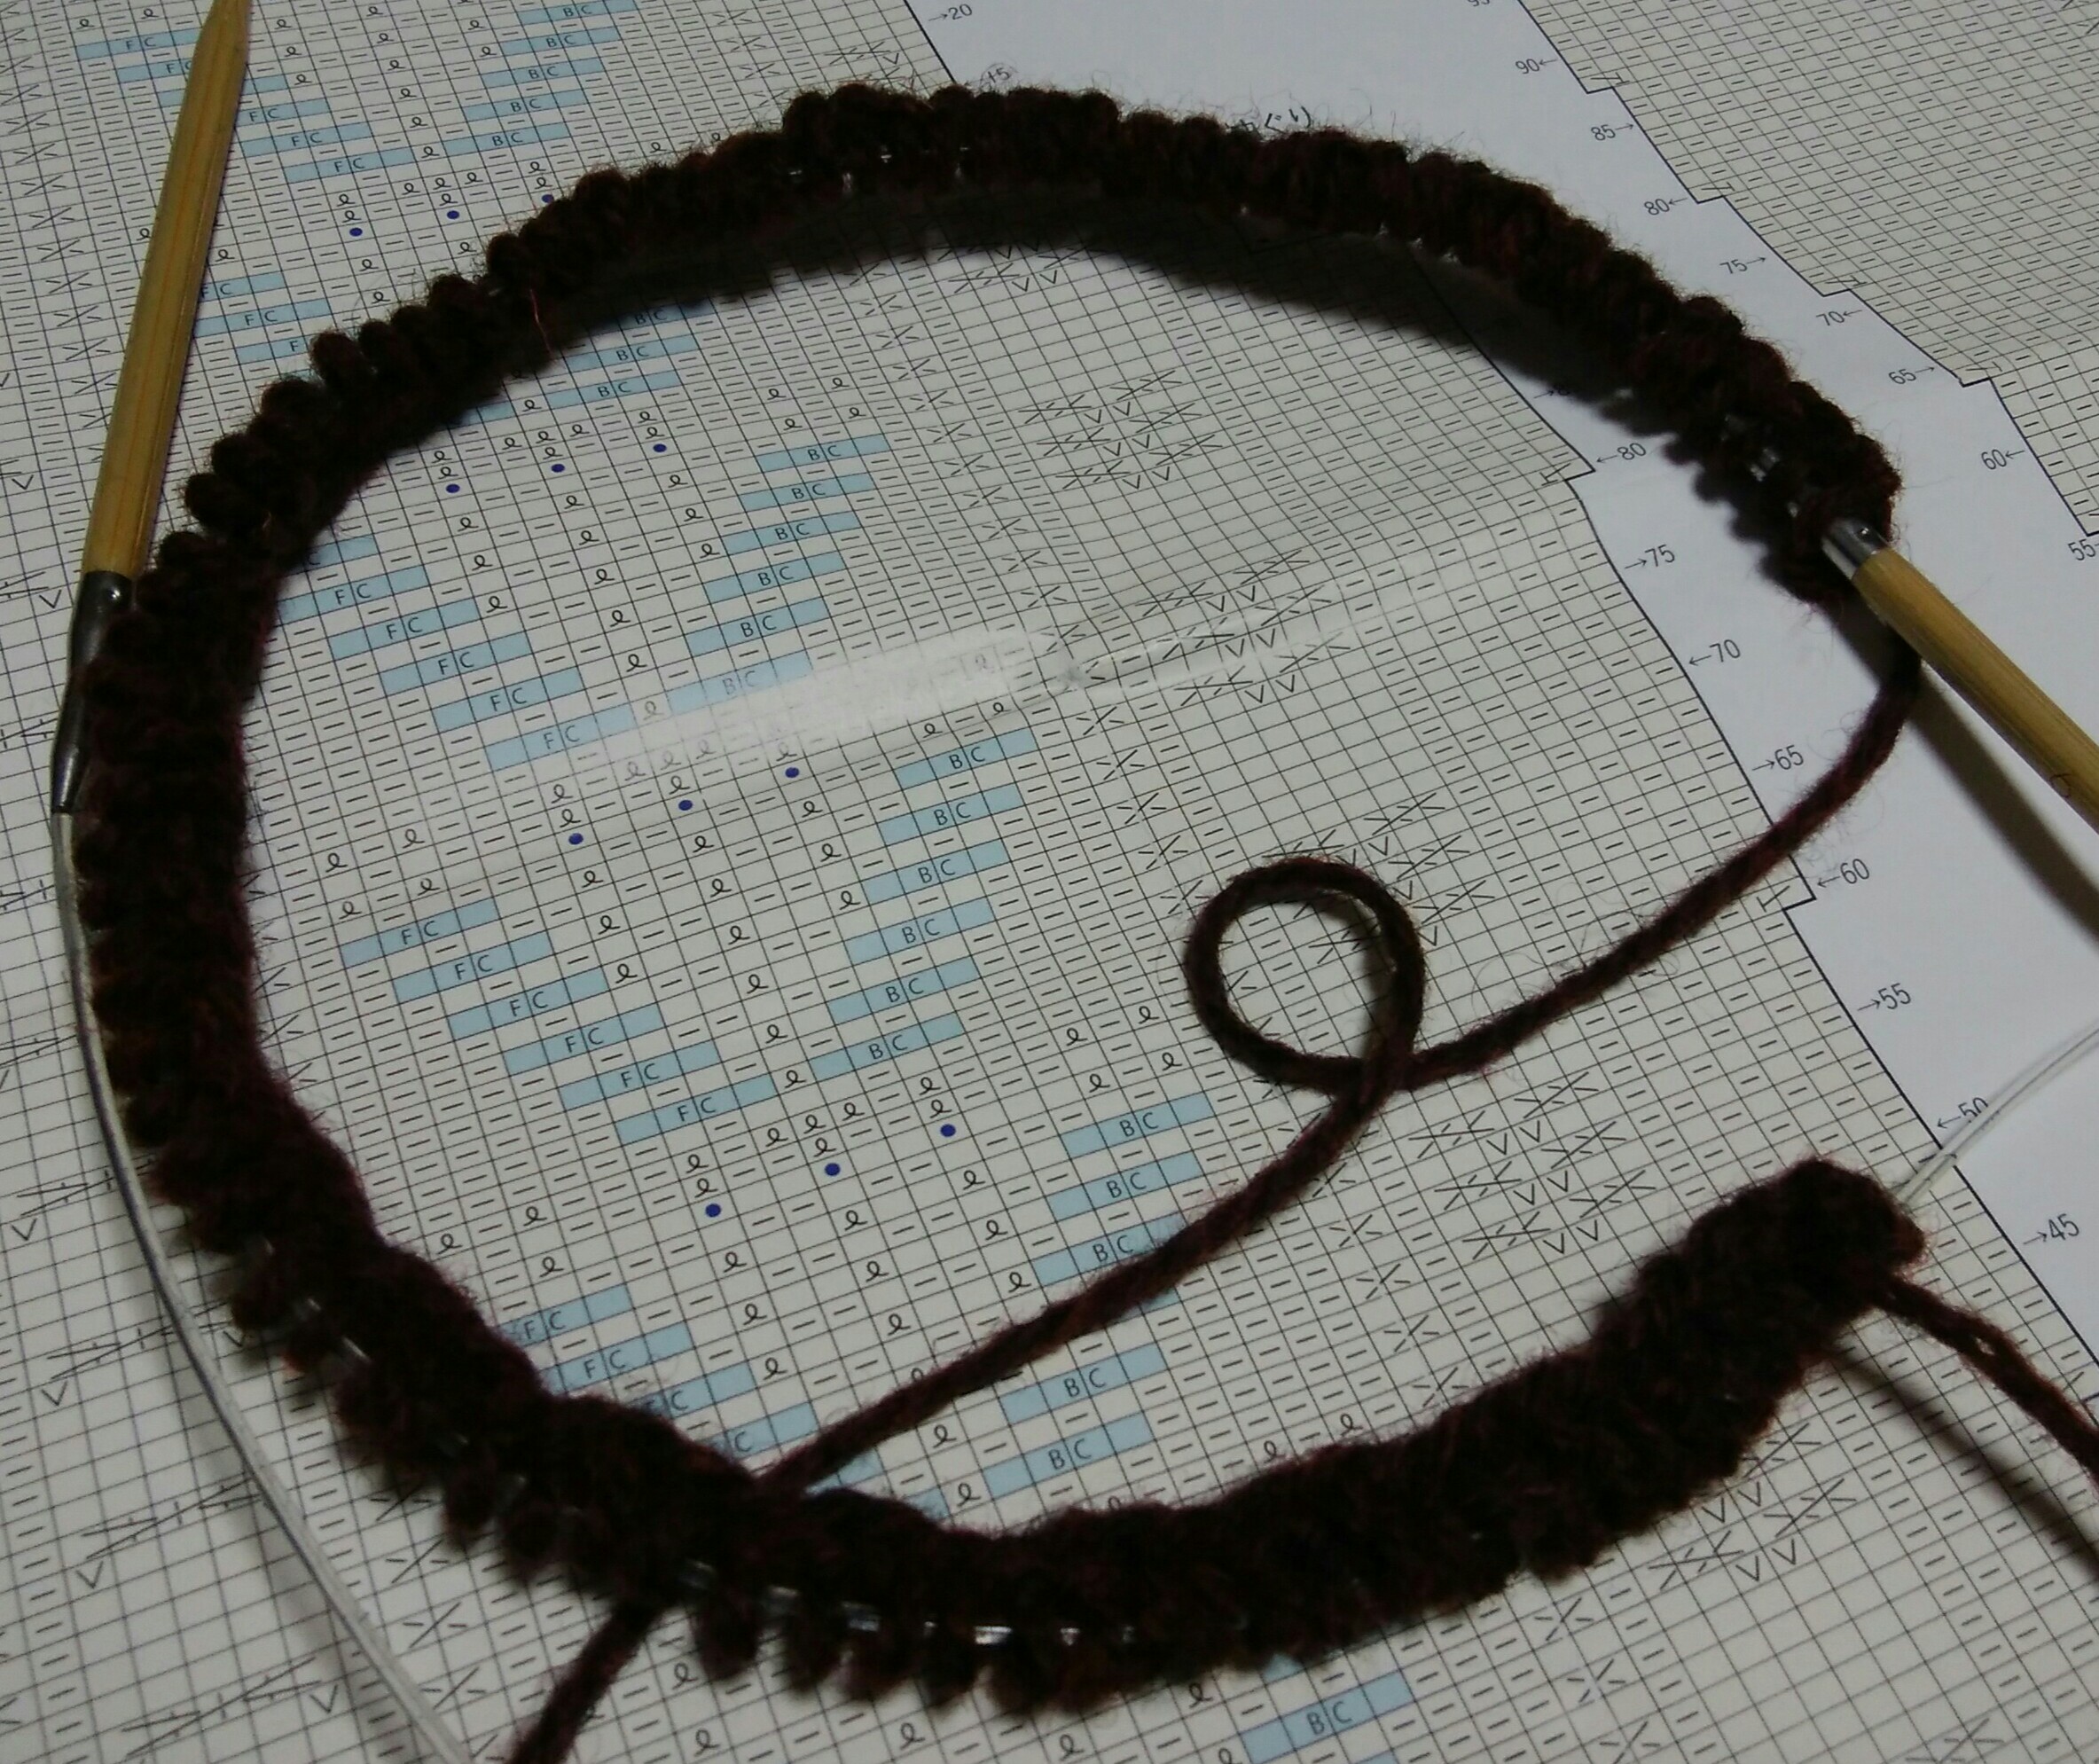 miknitsの茶色アランカーディガン、編み始めました